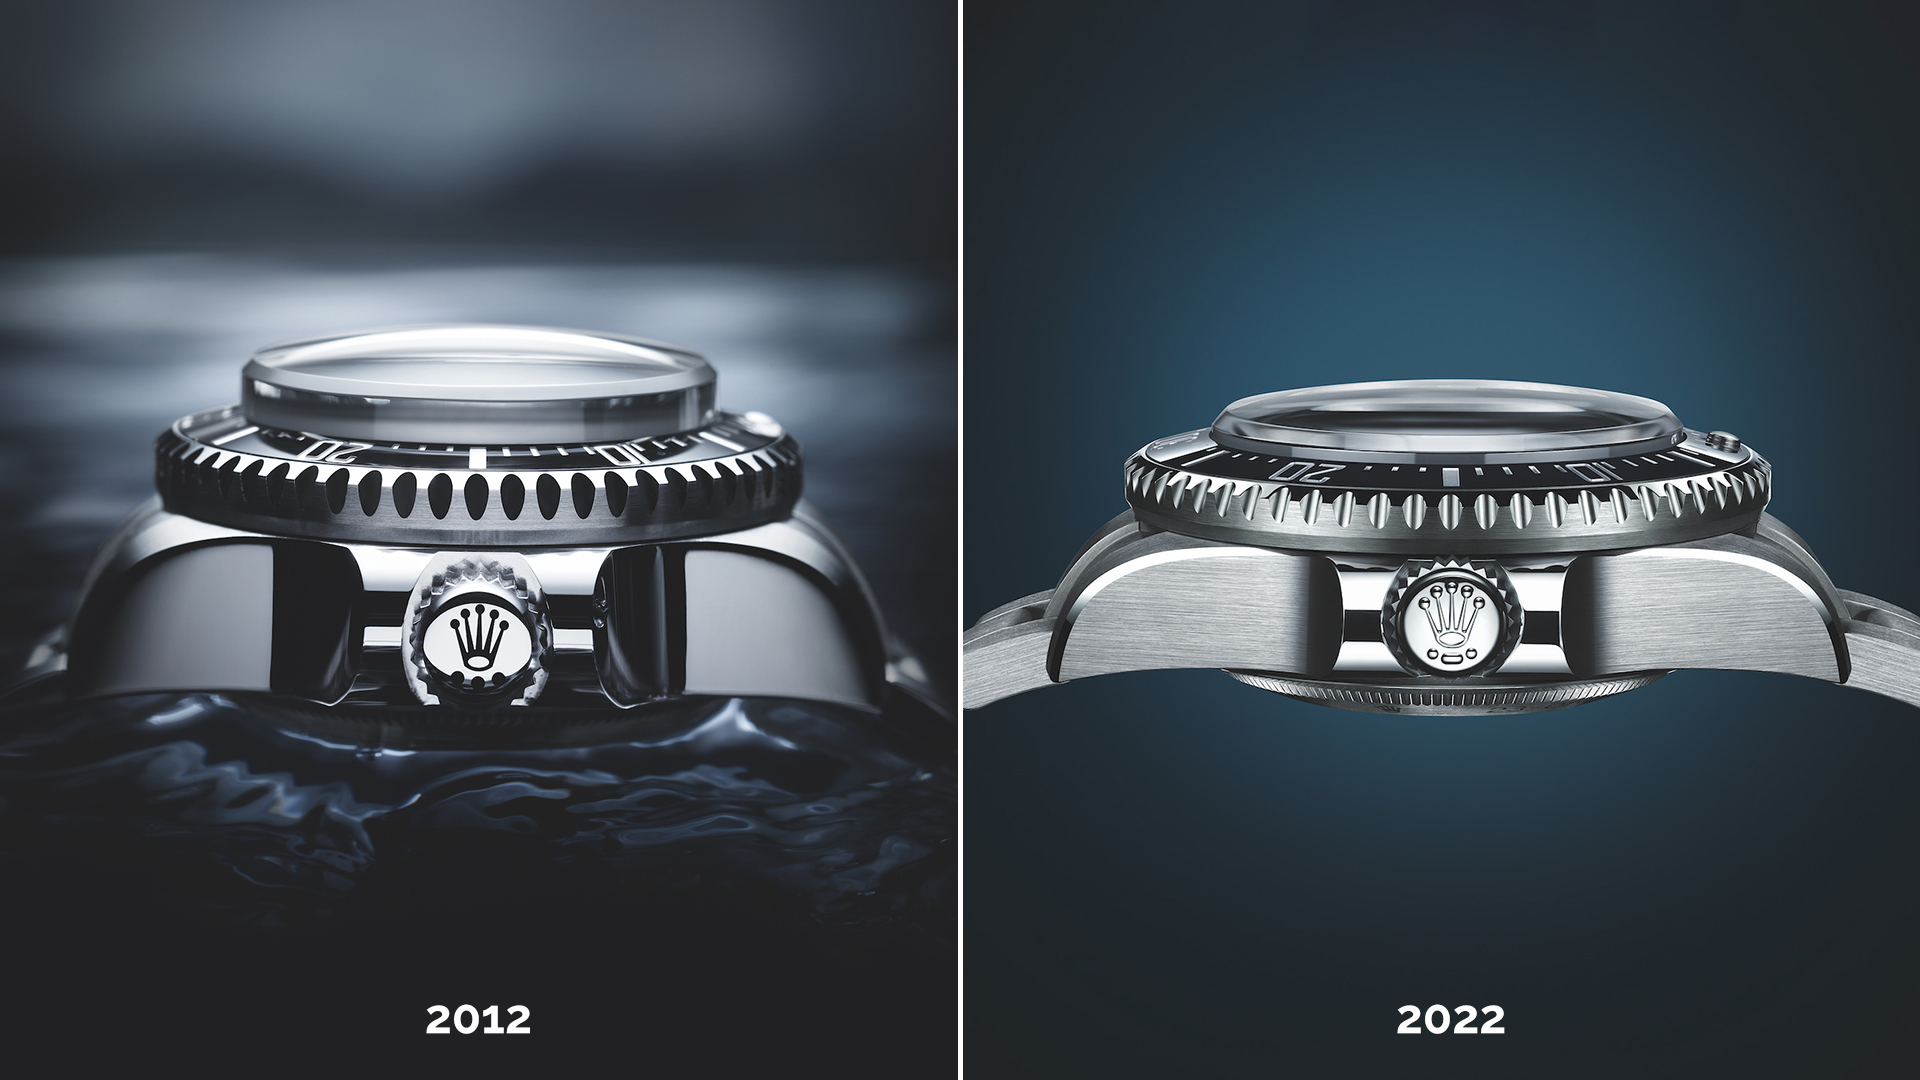 Vergleich Rolex Deep Sea Challenge 2012-2022